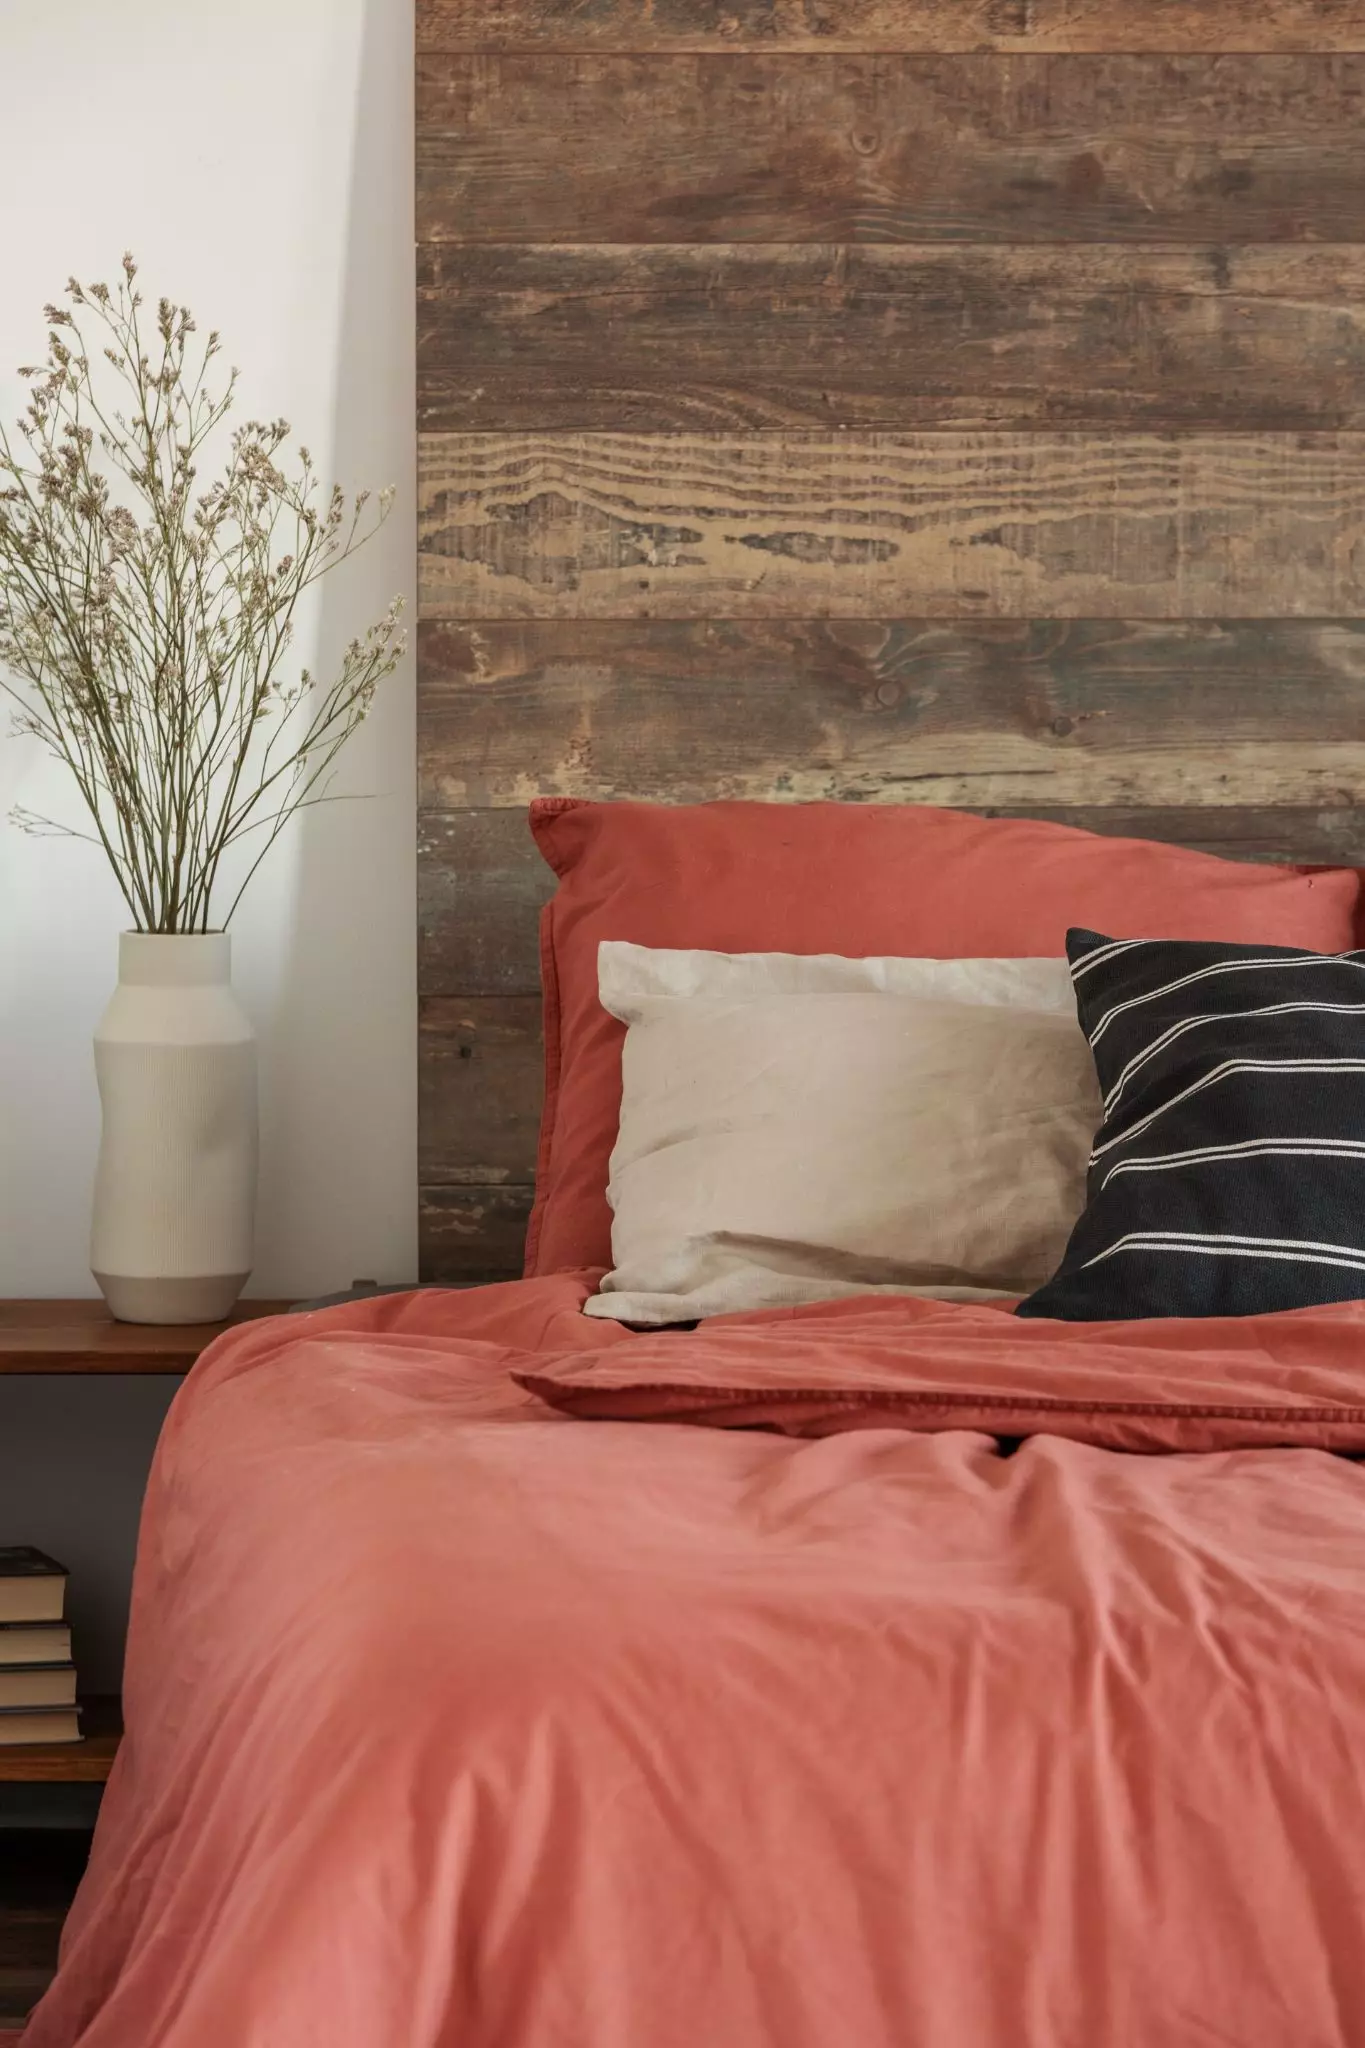 Để có một cái nhìn nhẹ nhàng hơn, bạn có thể chọn một chiếc giường với hình thức đơn giản